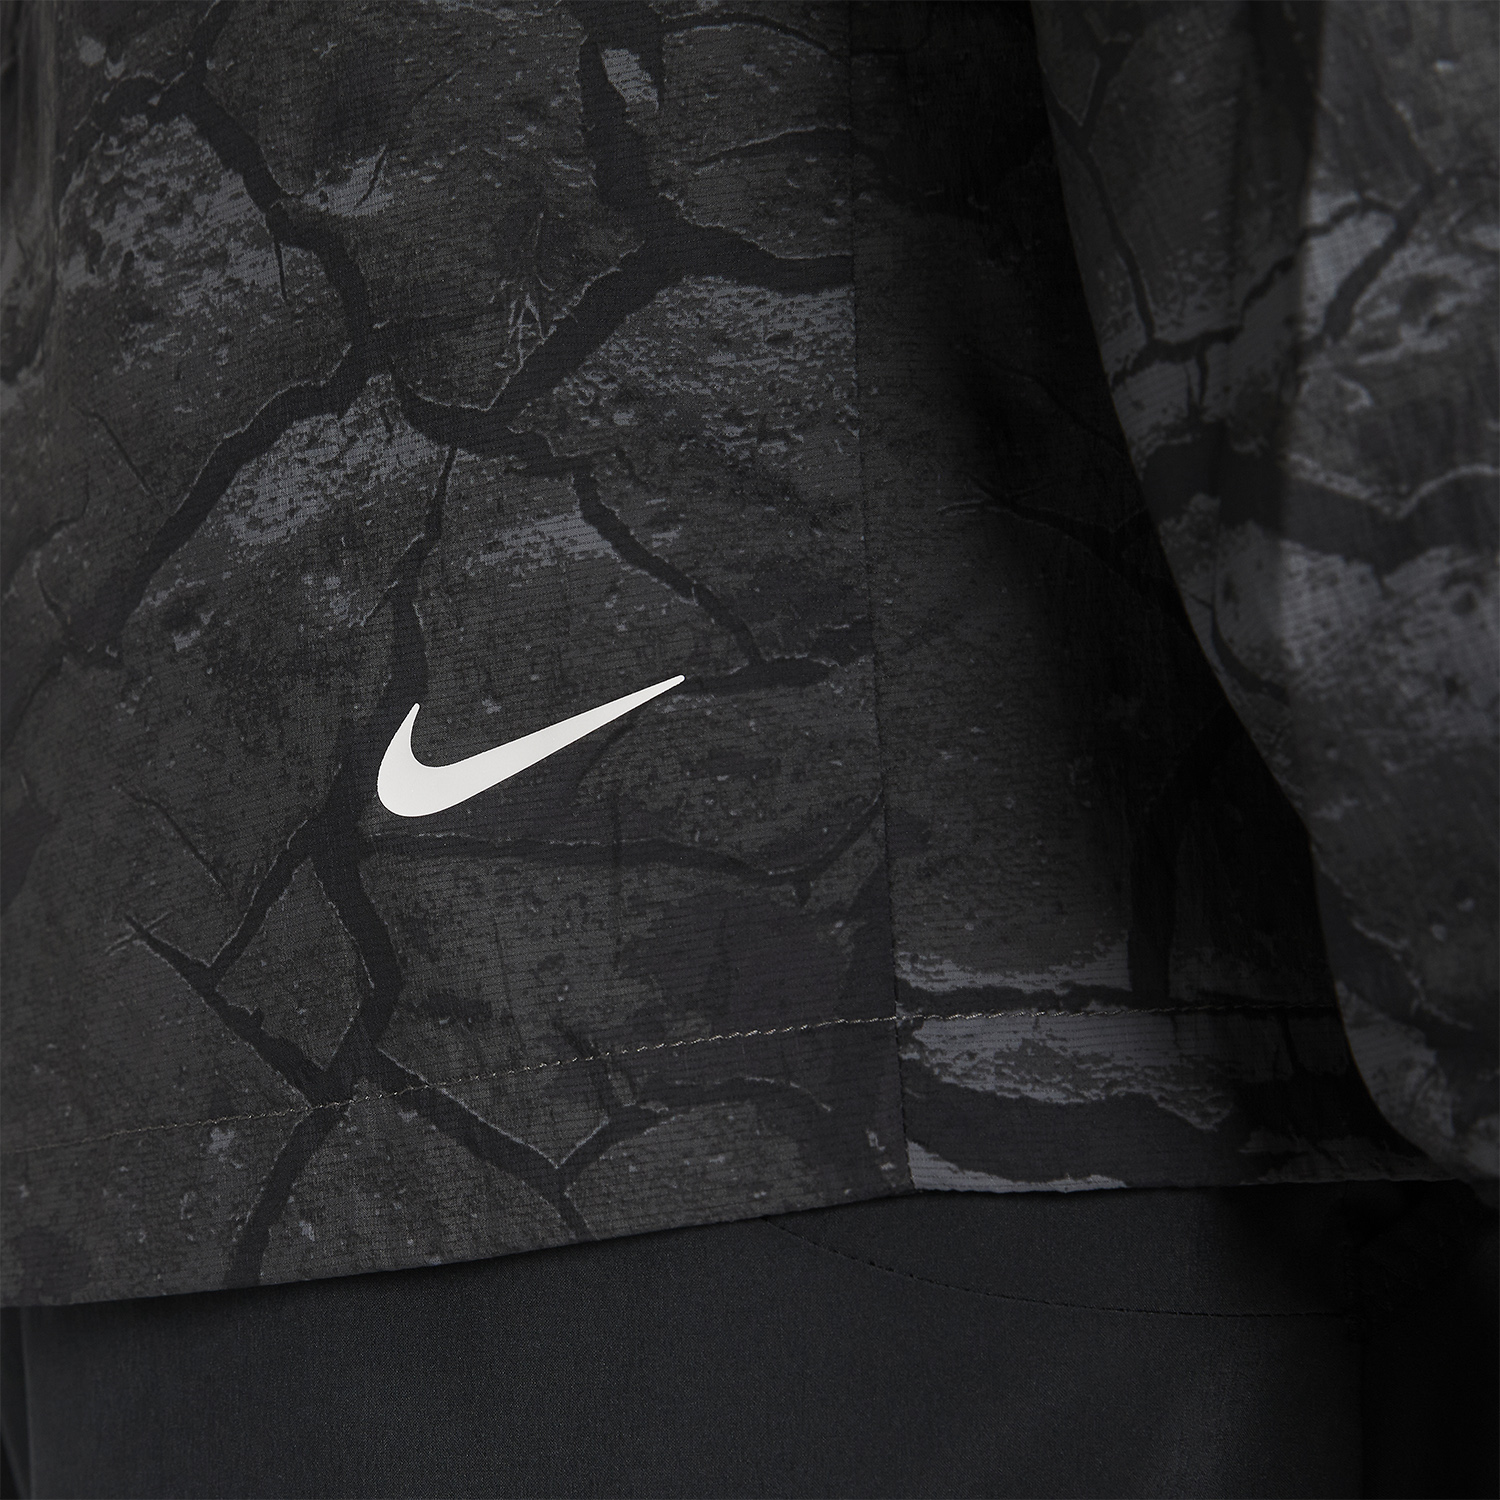 Nike Aireez Jacket - Medium Ash/Black/White